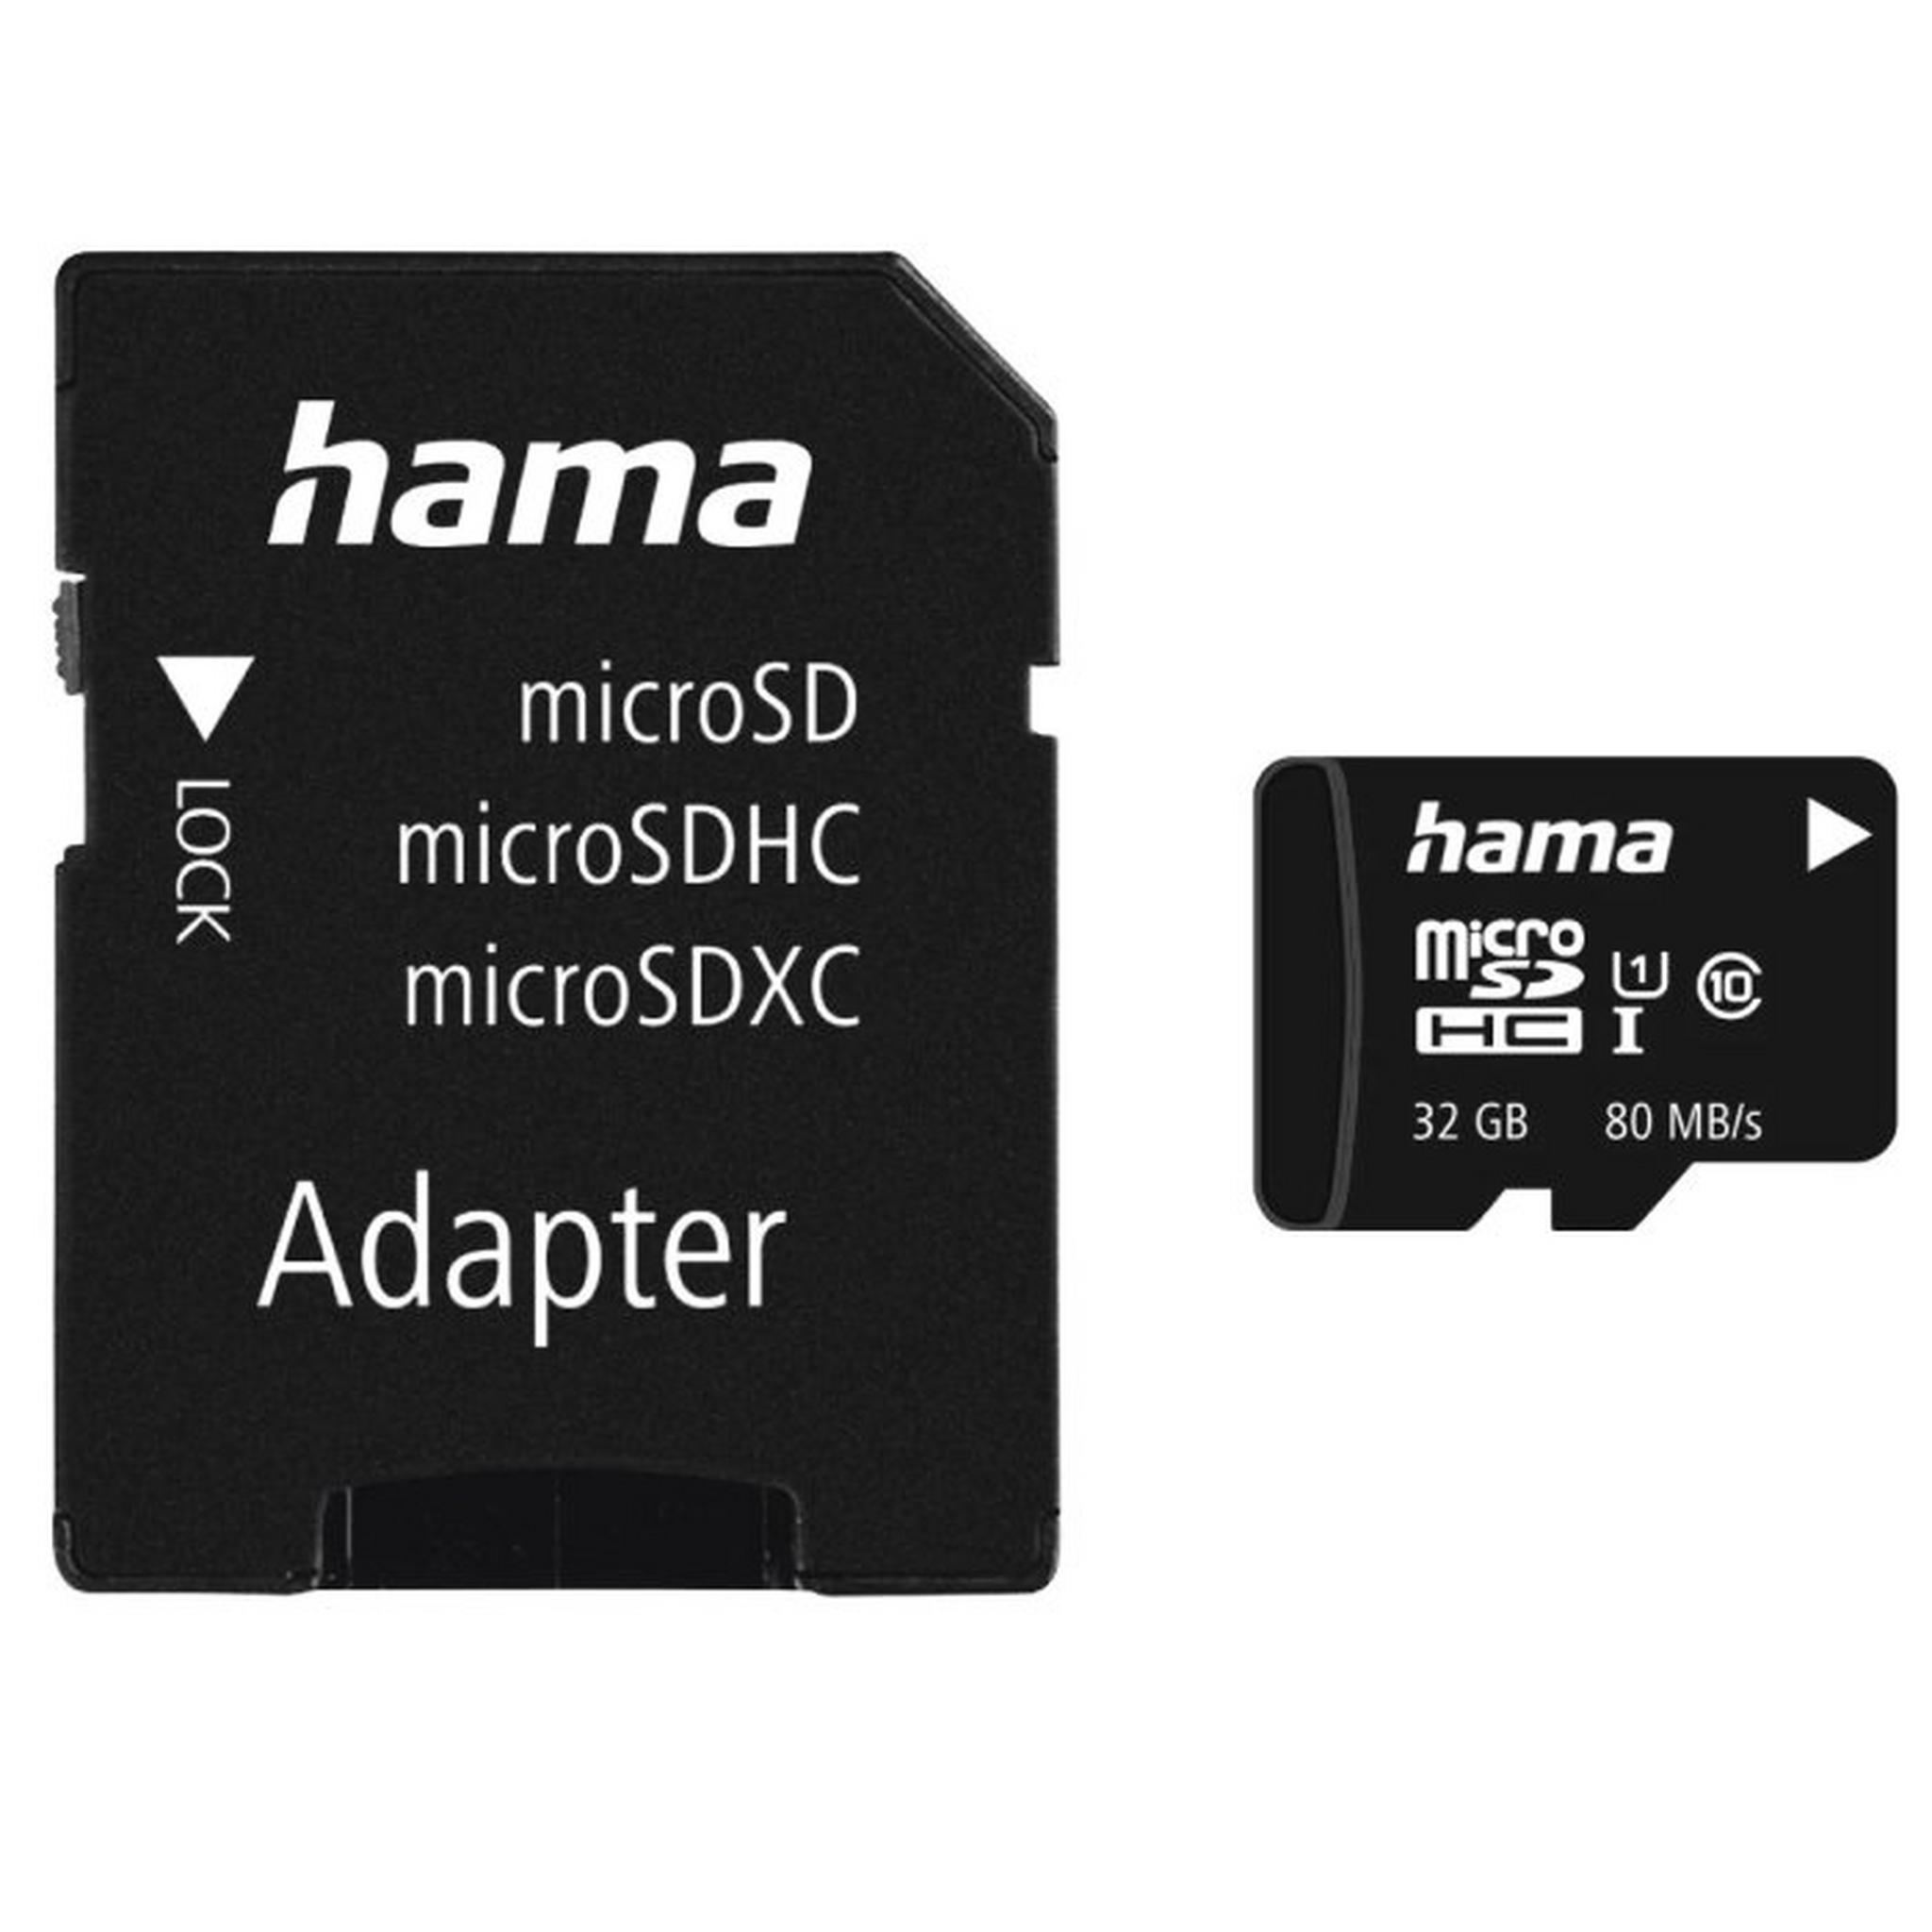 بطاقة ذاكرة هاما مايكروSDHC فئة 10 بتقنية Uhs-i بسرعة 80 ميجابايت، سعة 32 جيجابايت